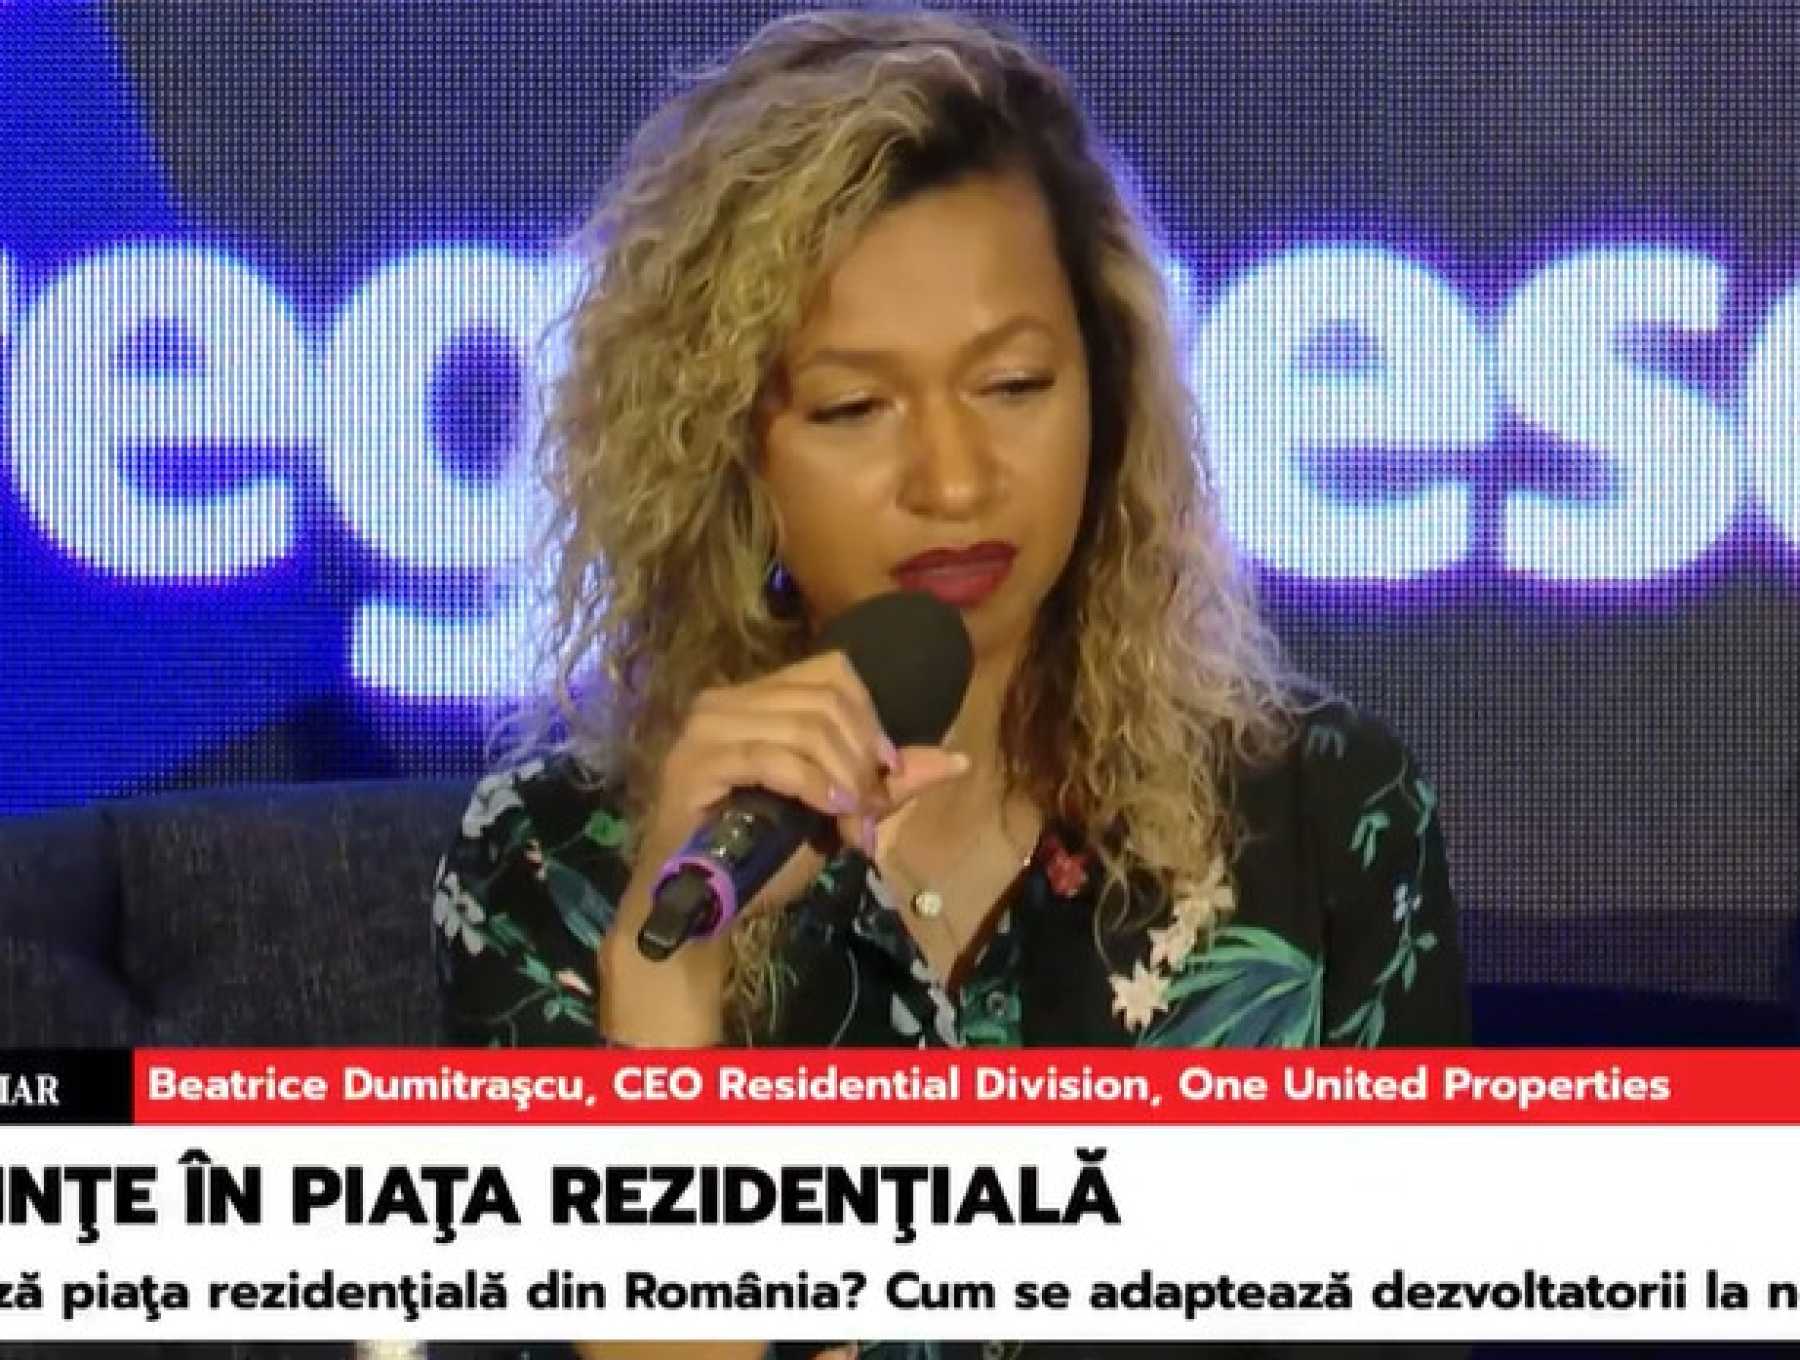 Beatrice Dumitrașcu, CEO Residential Division One United Properties, speaker în cadrul conferinței ZF „Tendințe în piața rezidențială”